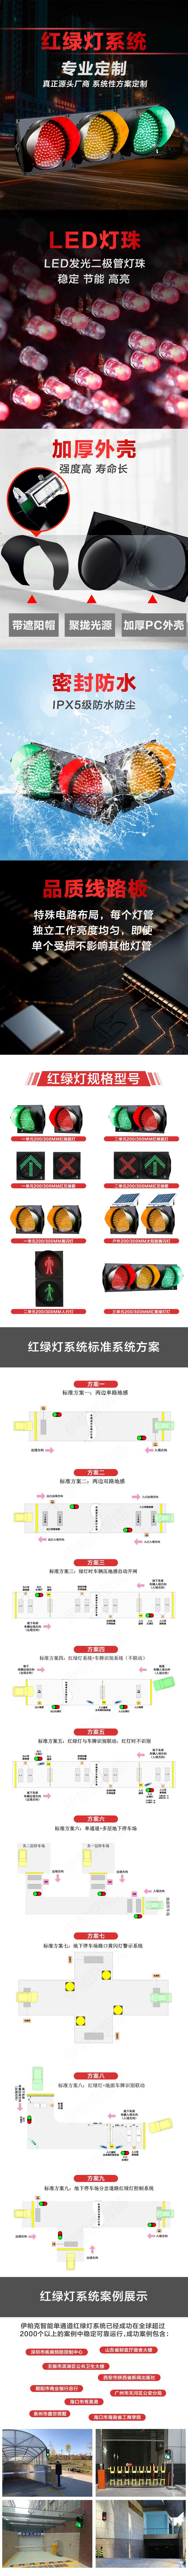 停車場紅綠燈智能控制系統